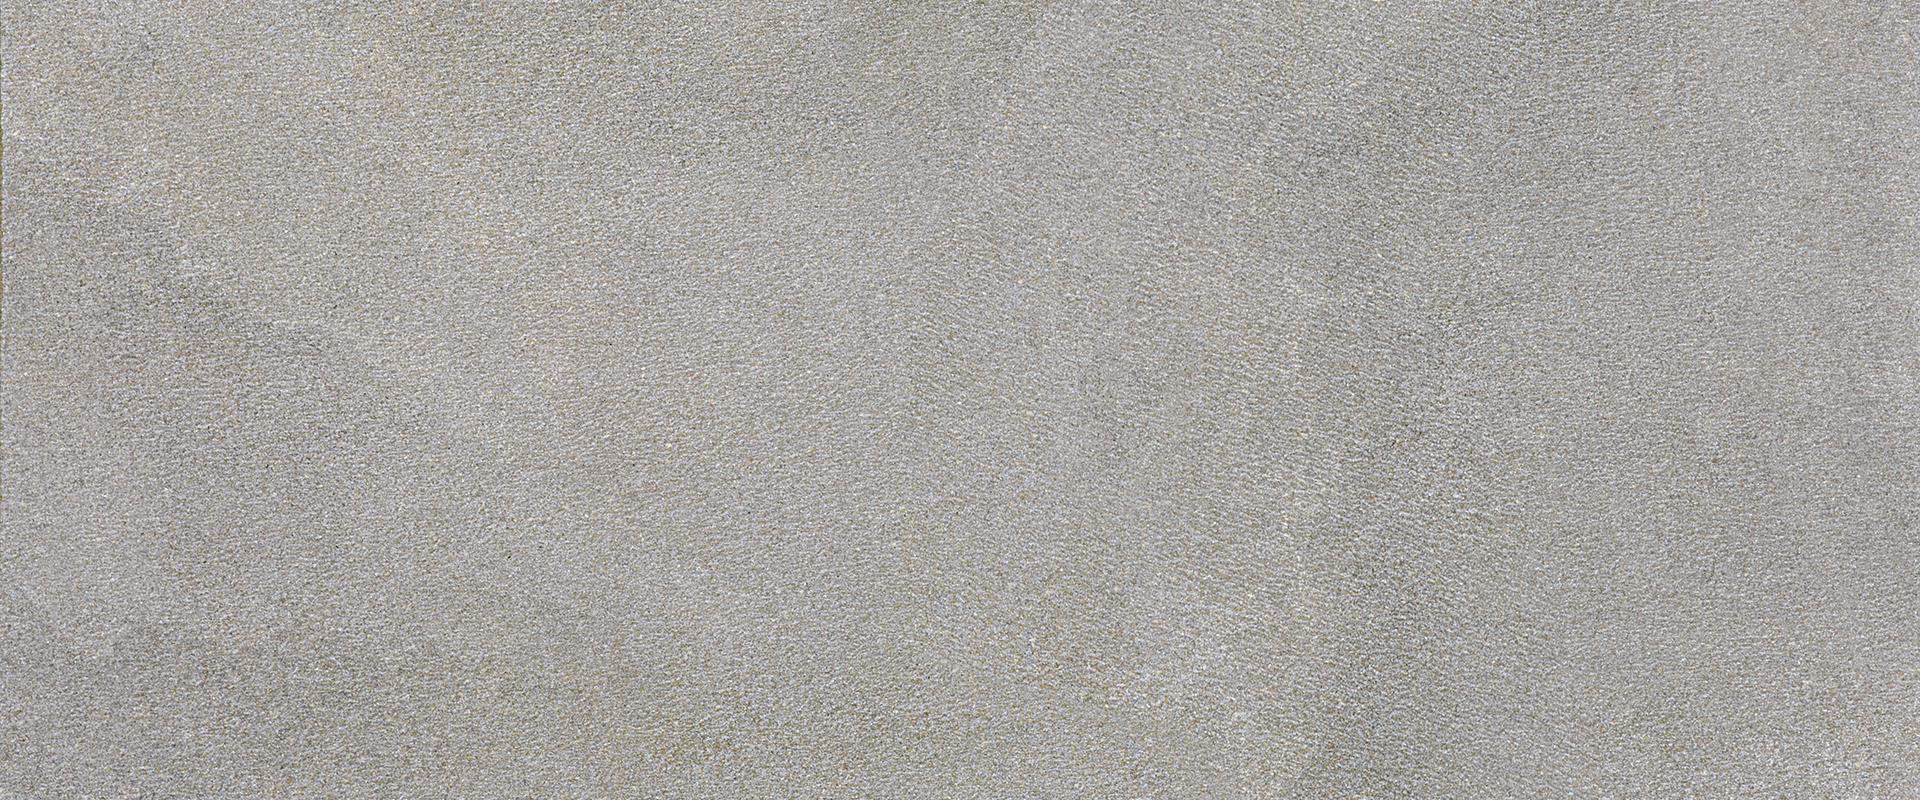 Stone Project: Strutturato Grey Wall Tile (24"x48"x9.5-mm | strutturato)